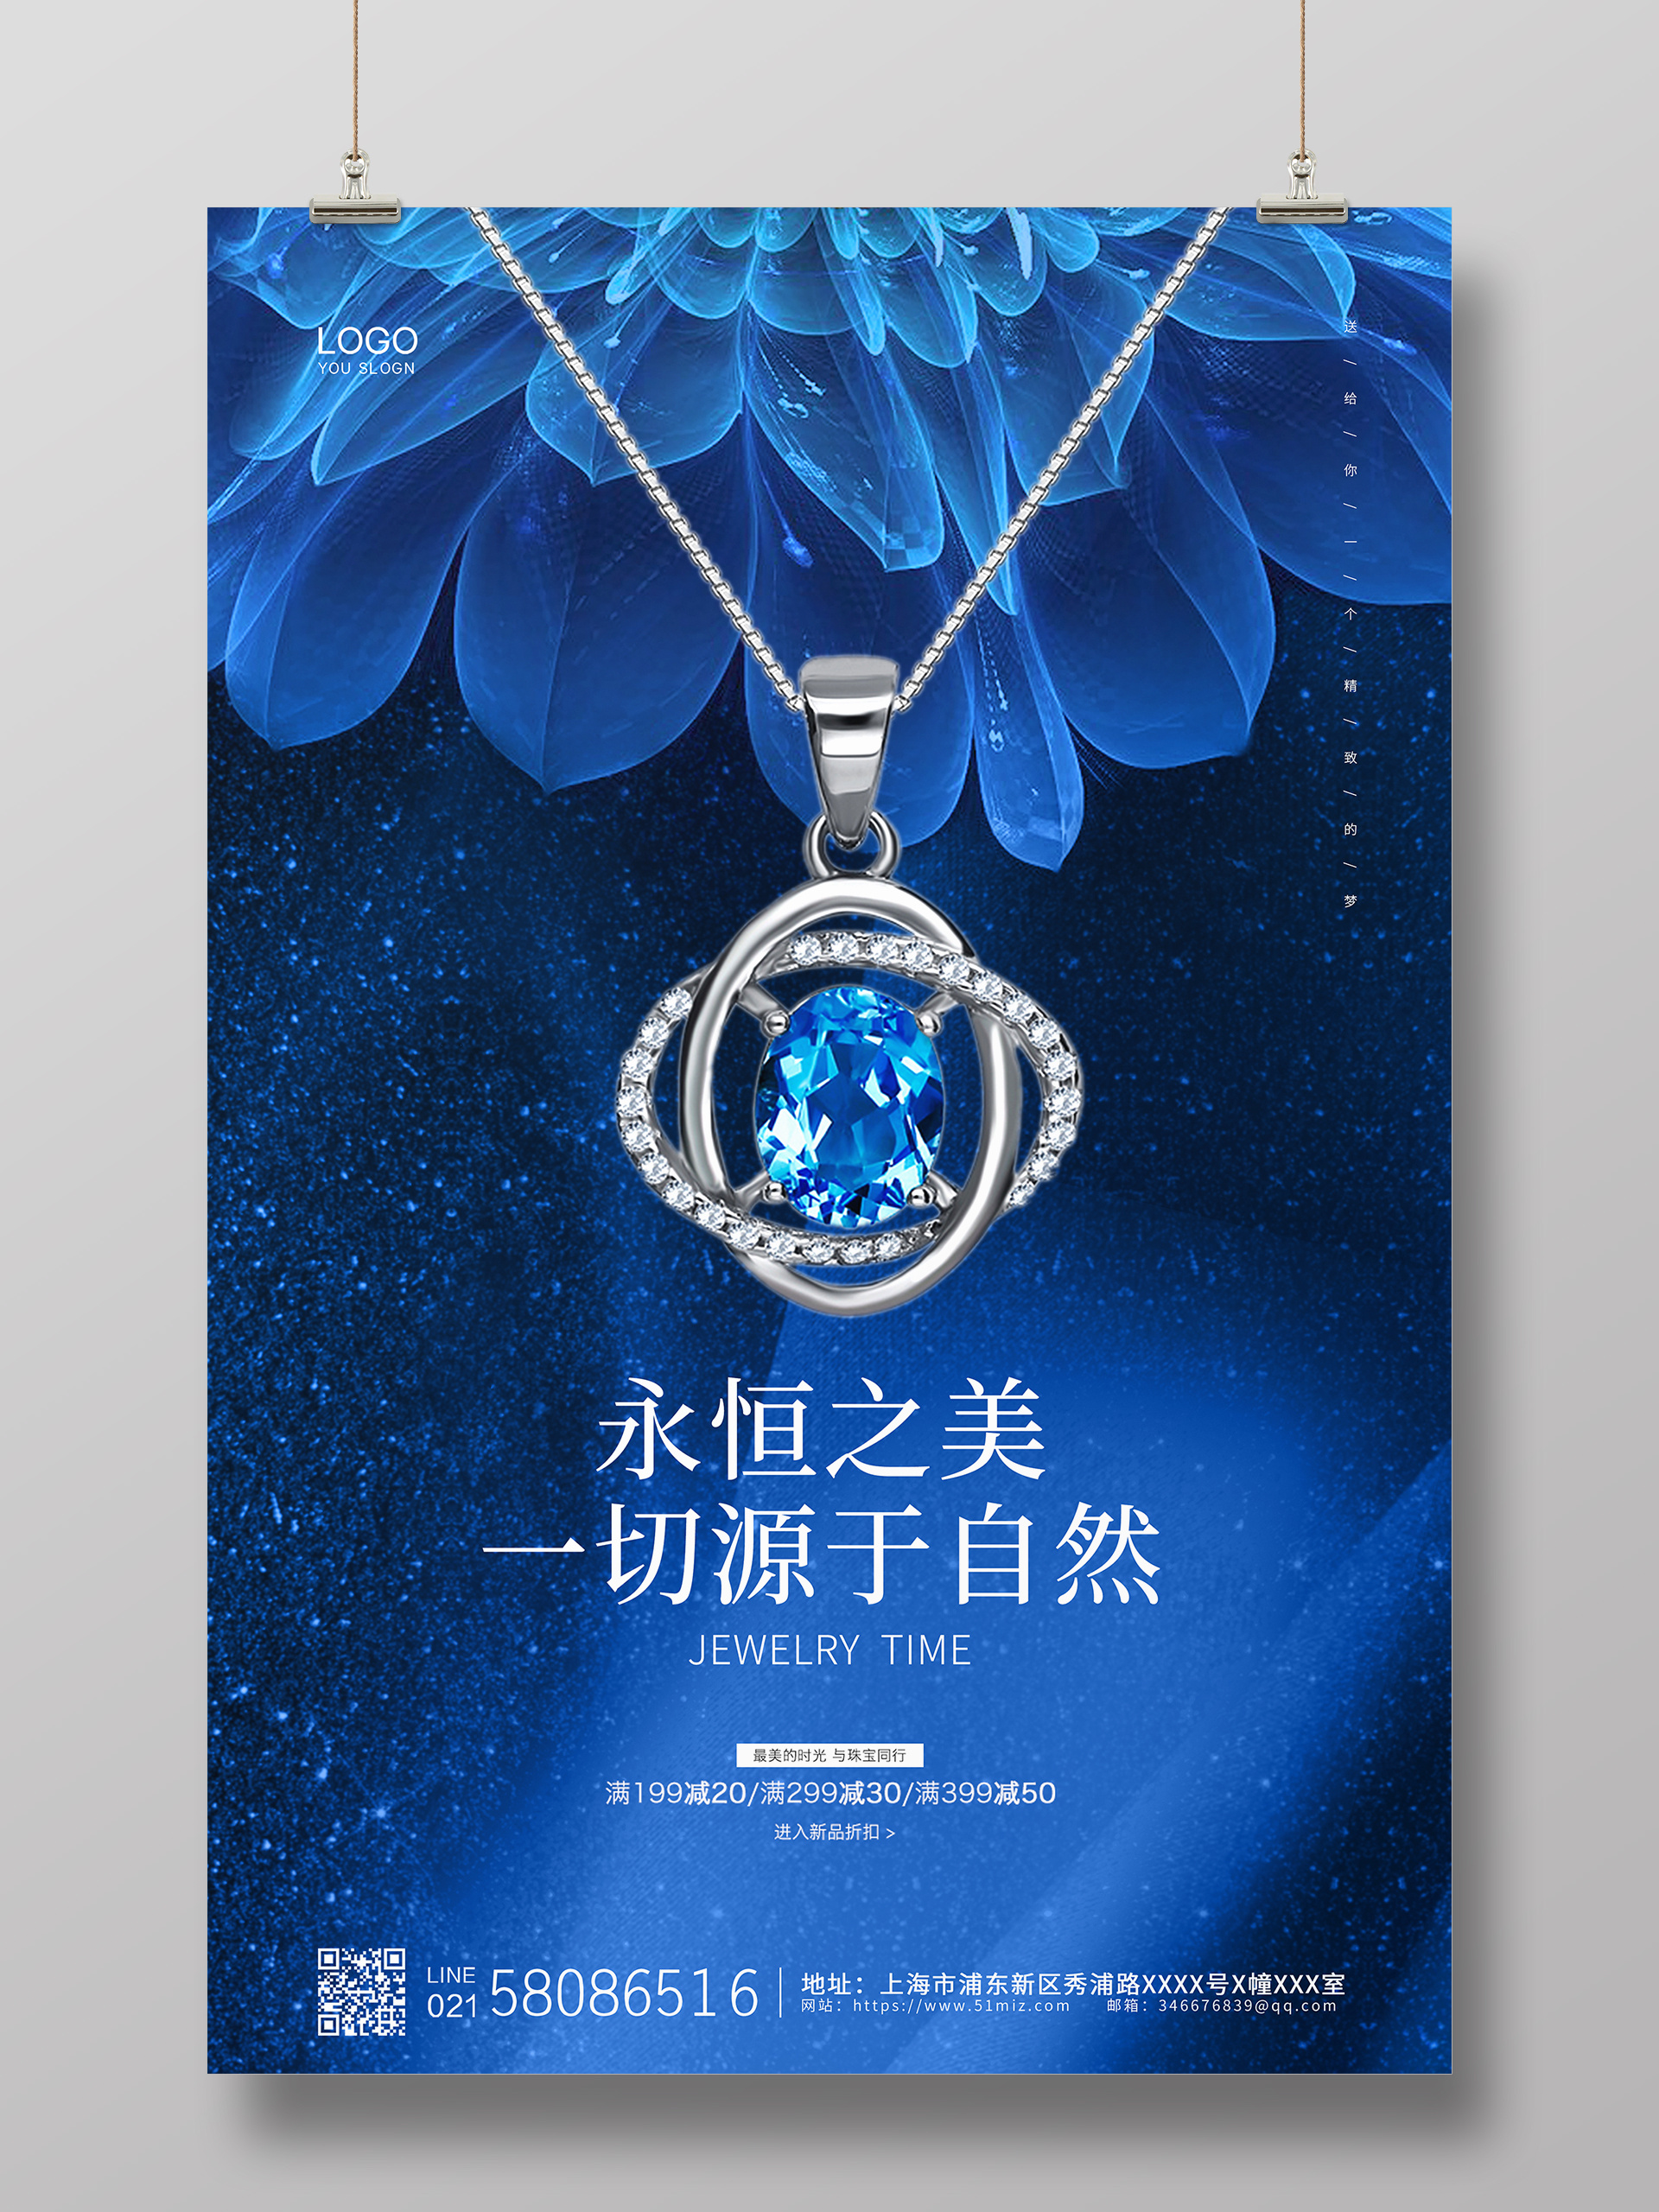 蓝色简约大气炫丽项链珠宝活动促销宣传海报